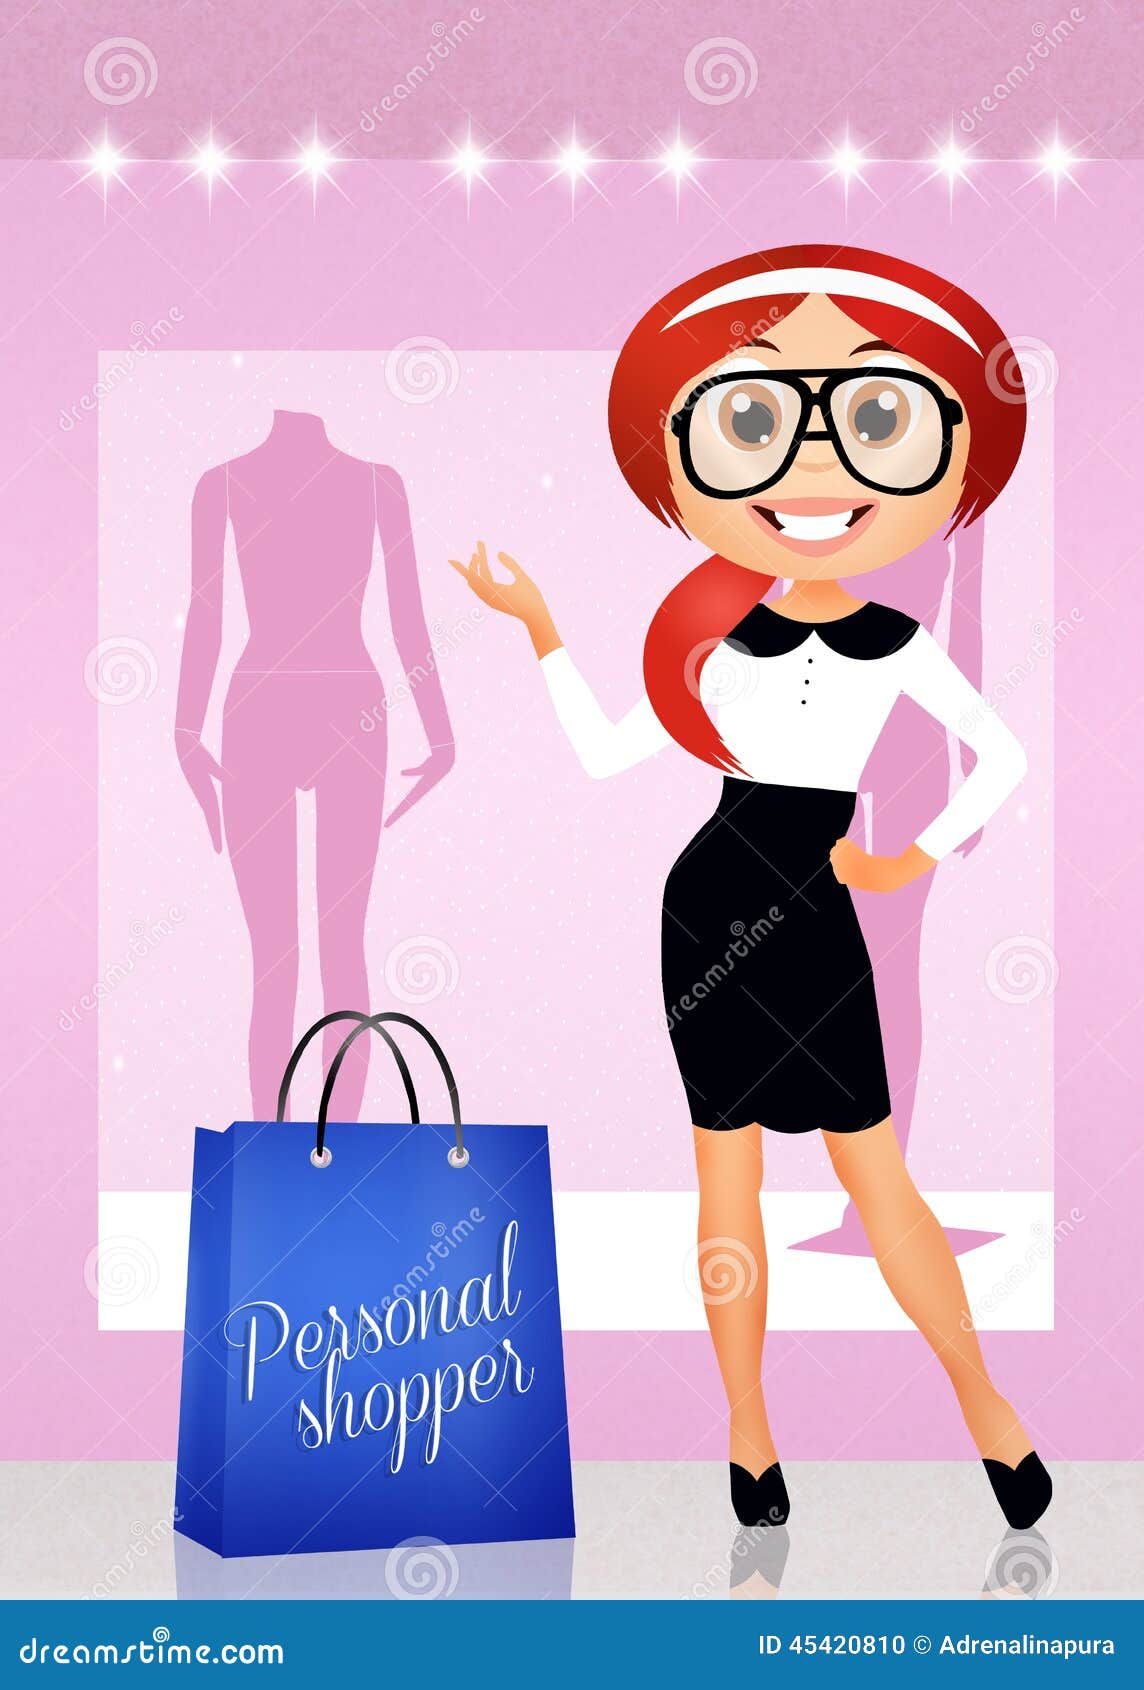 Personal shopper stock illustration. Illustration of female - 45420810